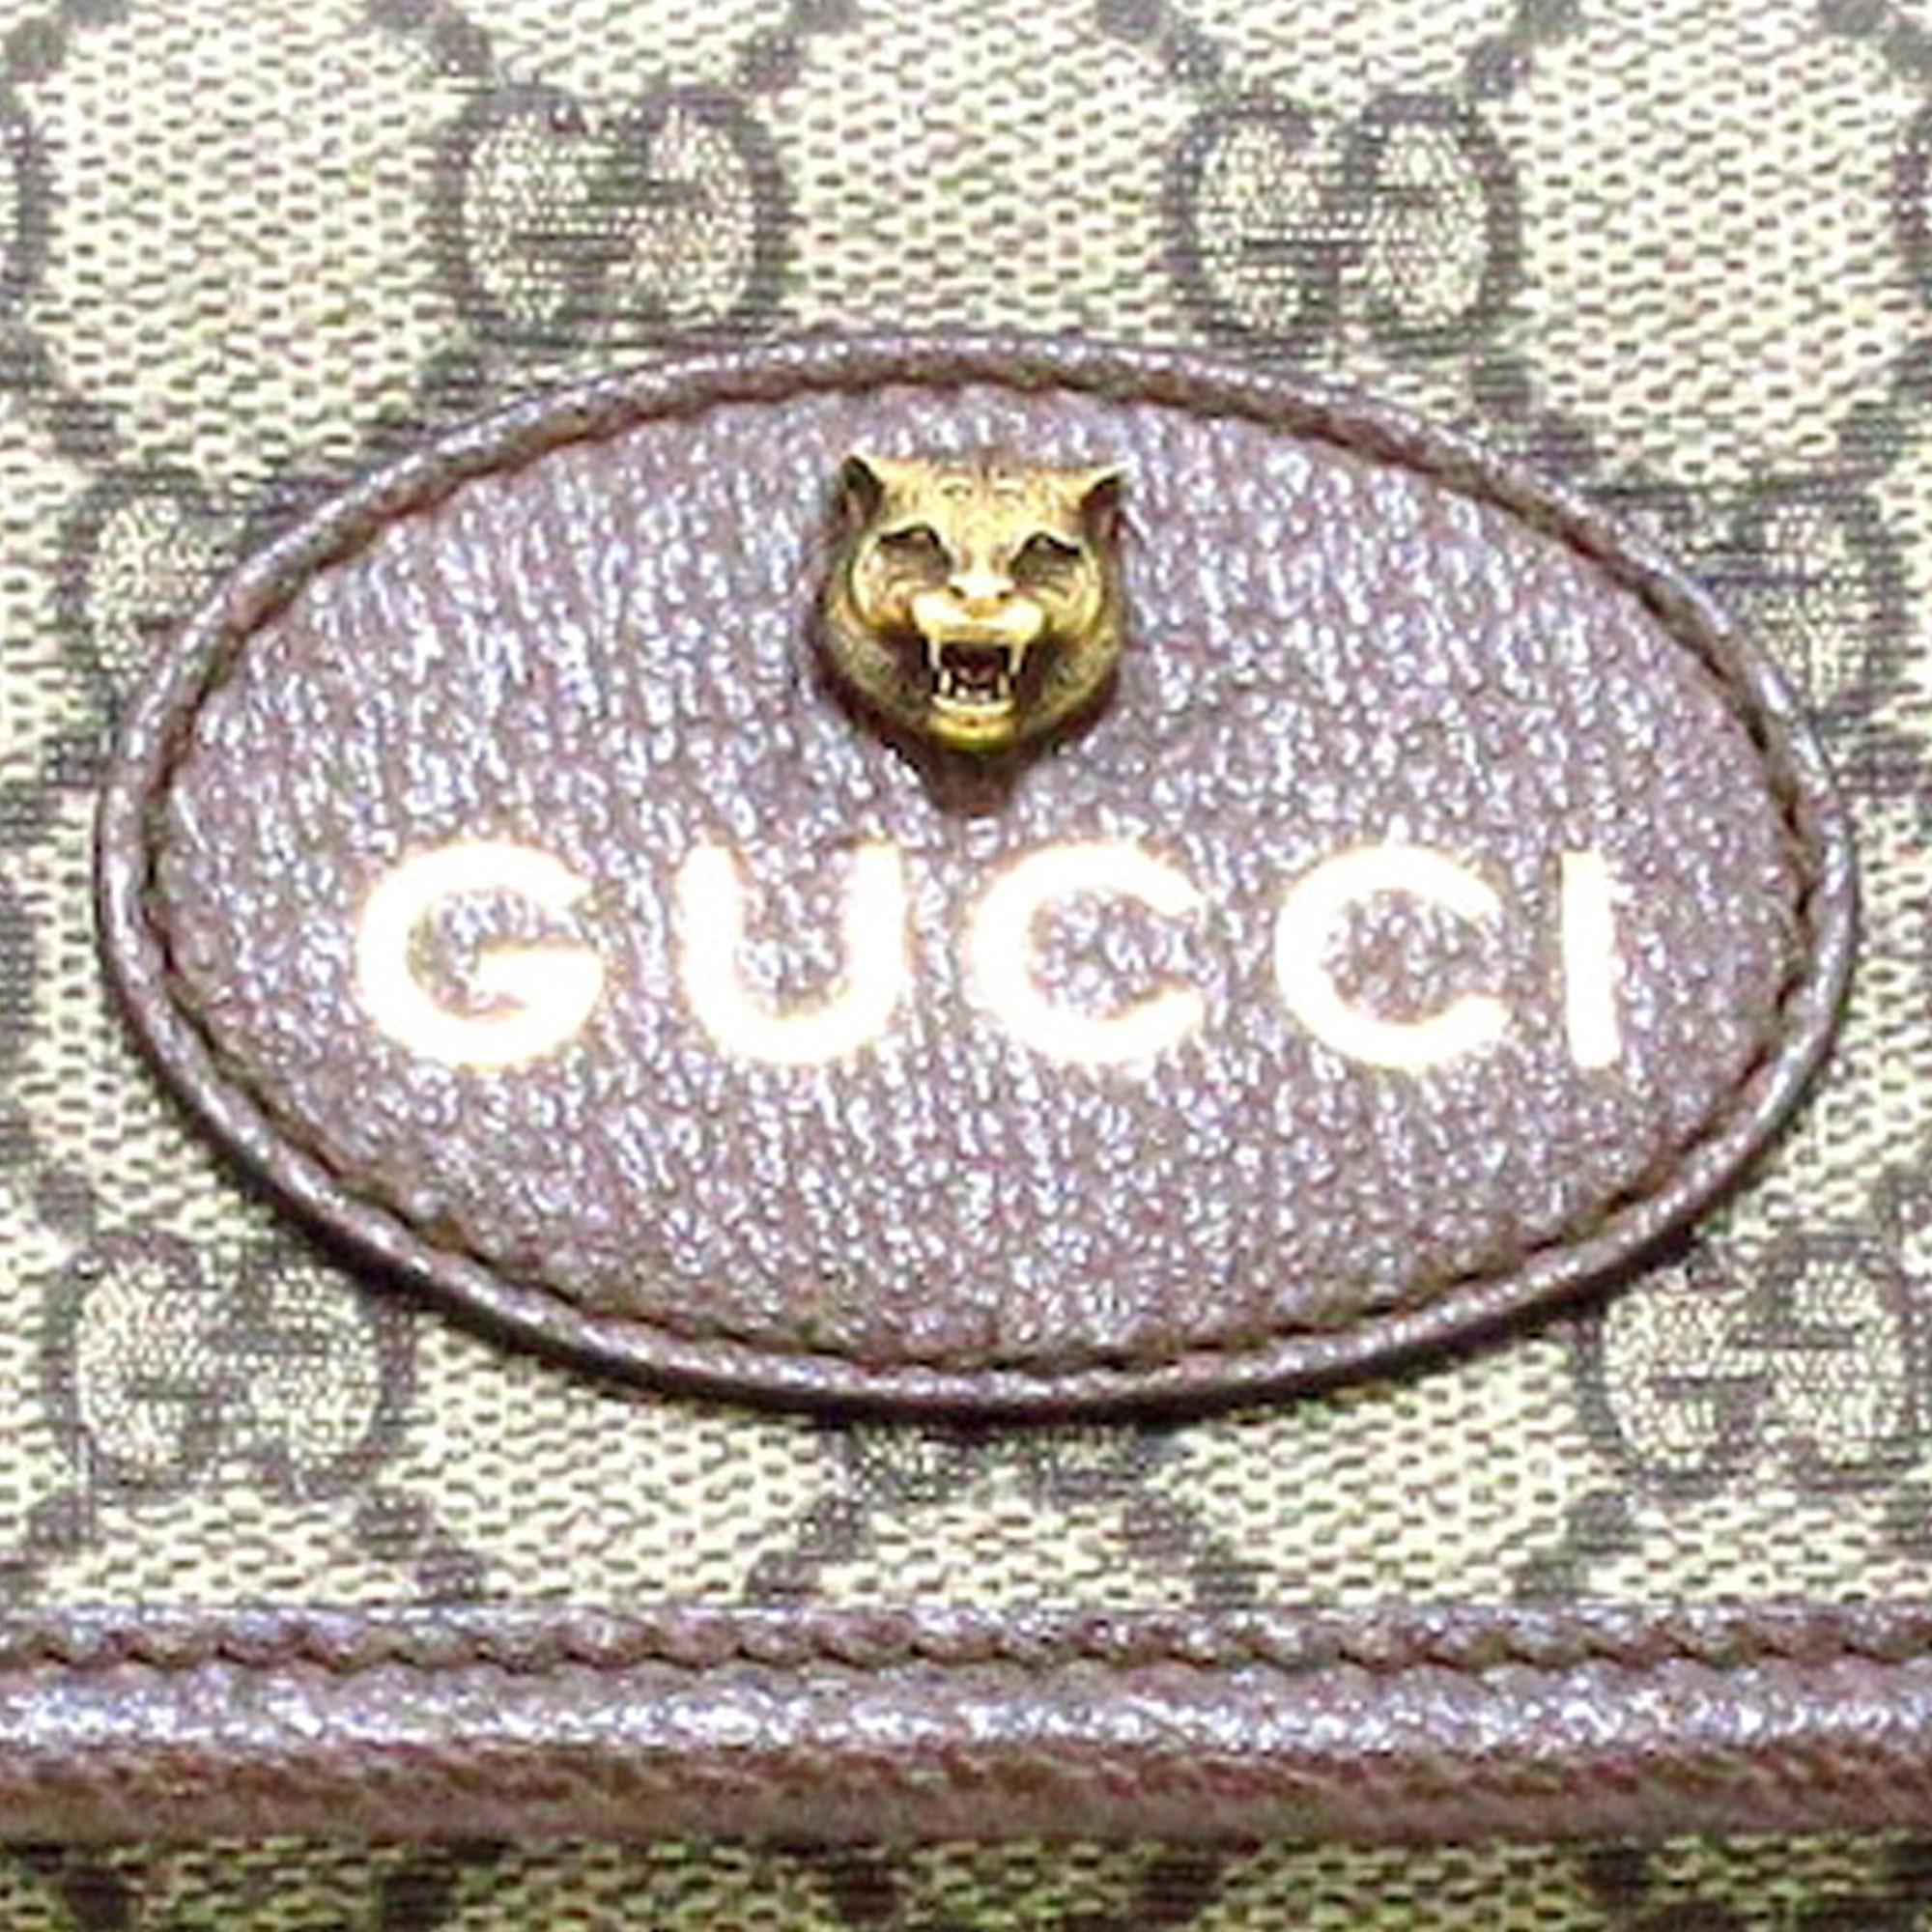 Gucci Beige/Brown GG Supreme Neo Vintage Belt Bag